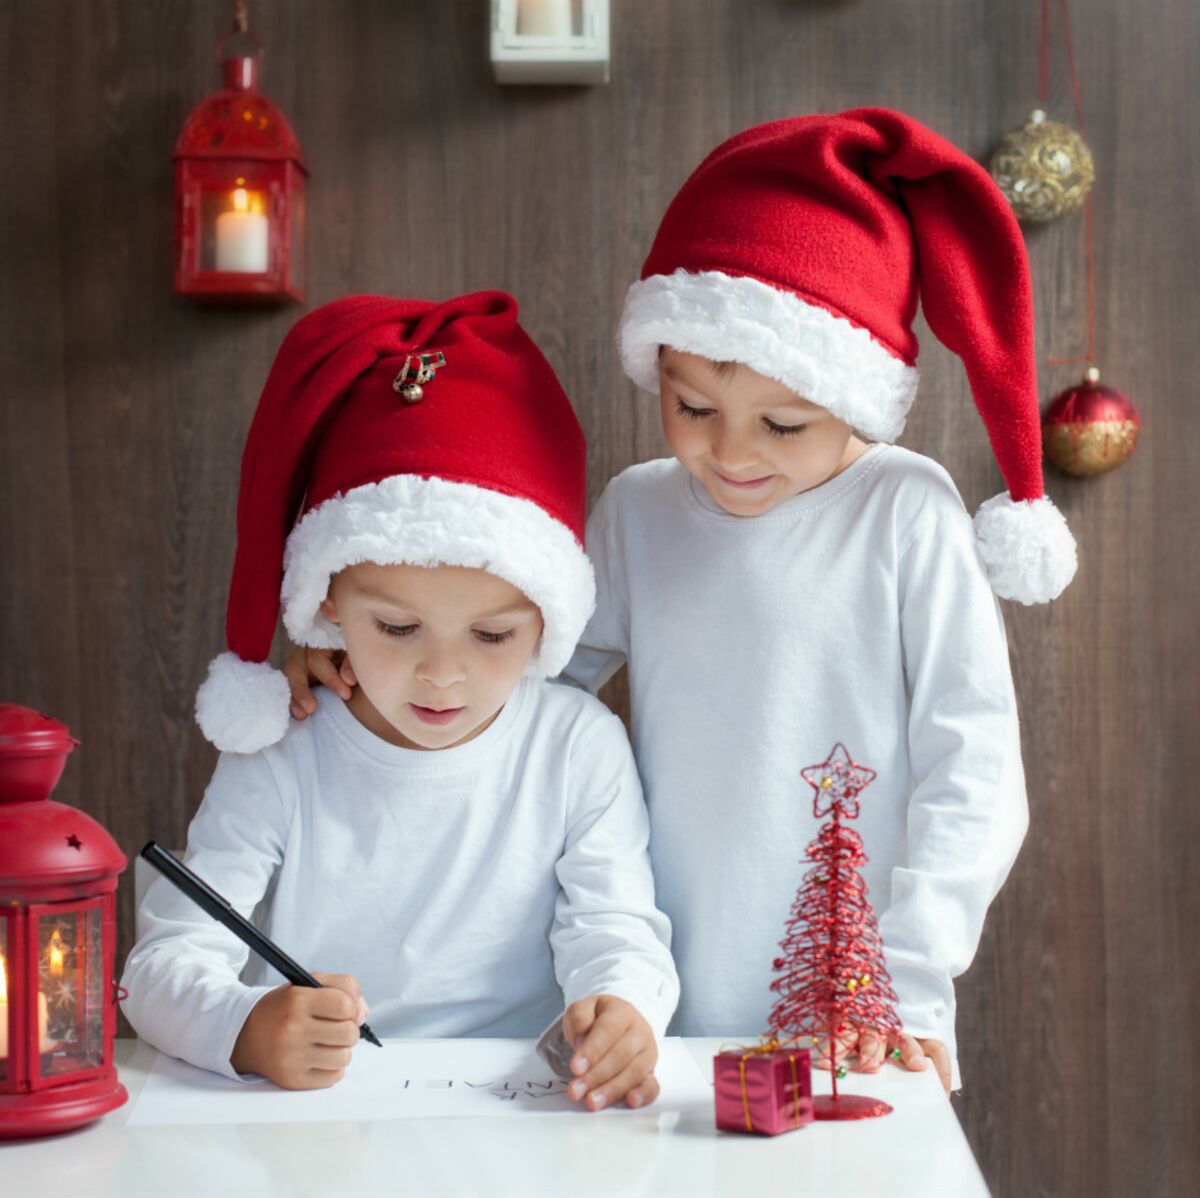 PHOTOS - Nos idées de cadeaux de Noël pour les enfants (3 ans et